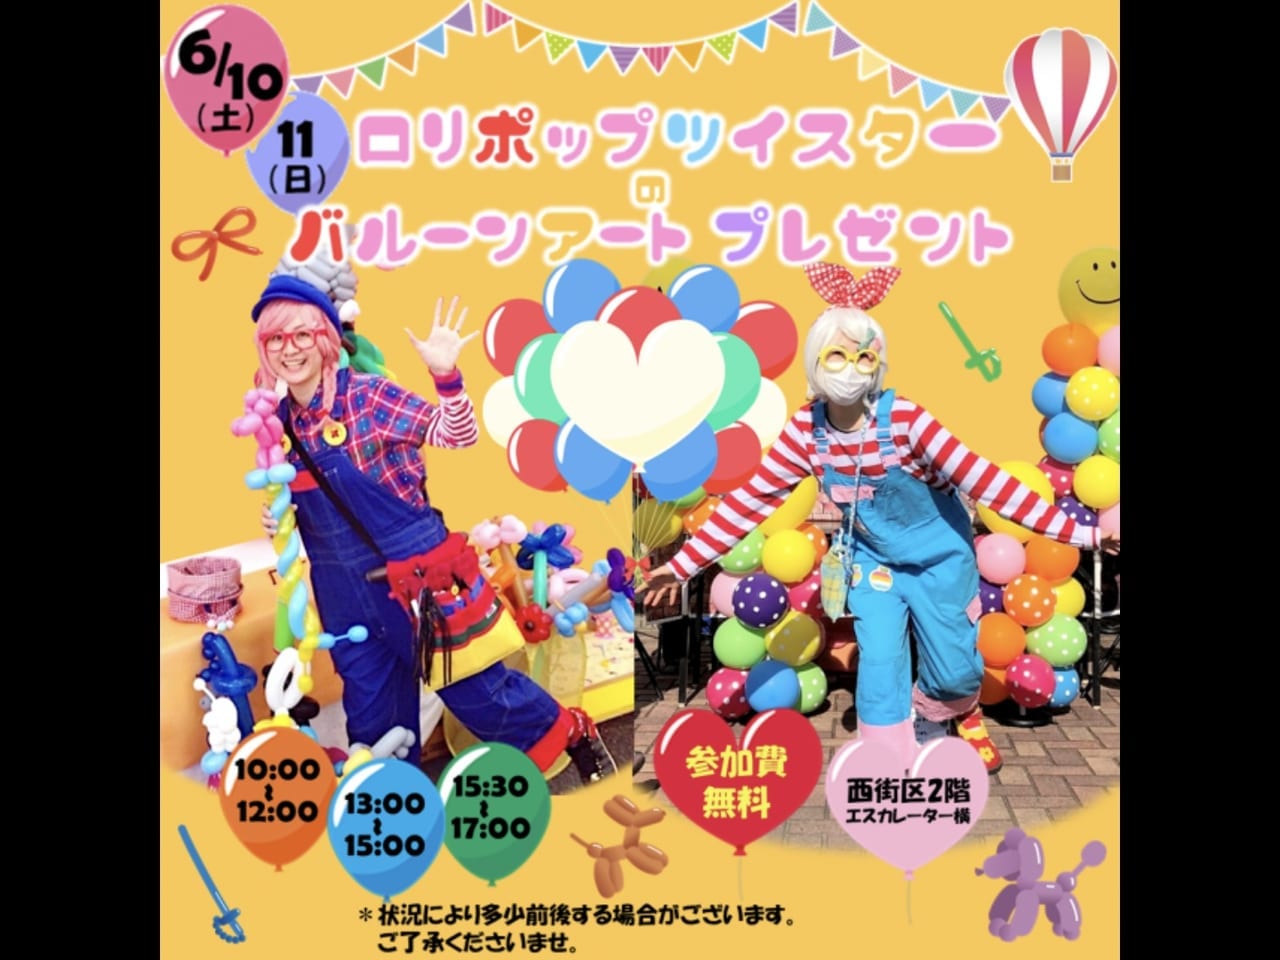 【吉川市】6/10〜11 ロリポップツイスターのバルーンアートプレゼントイベントが開催されるそうです！キッズから大人まで楽しめるイベントに参加してみてはいかがでしょうか。